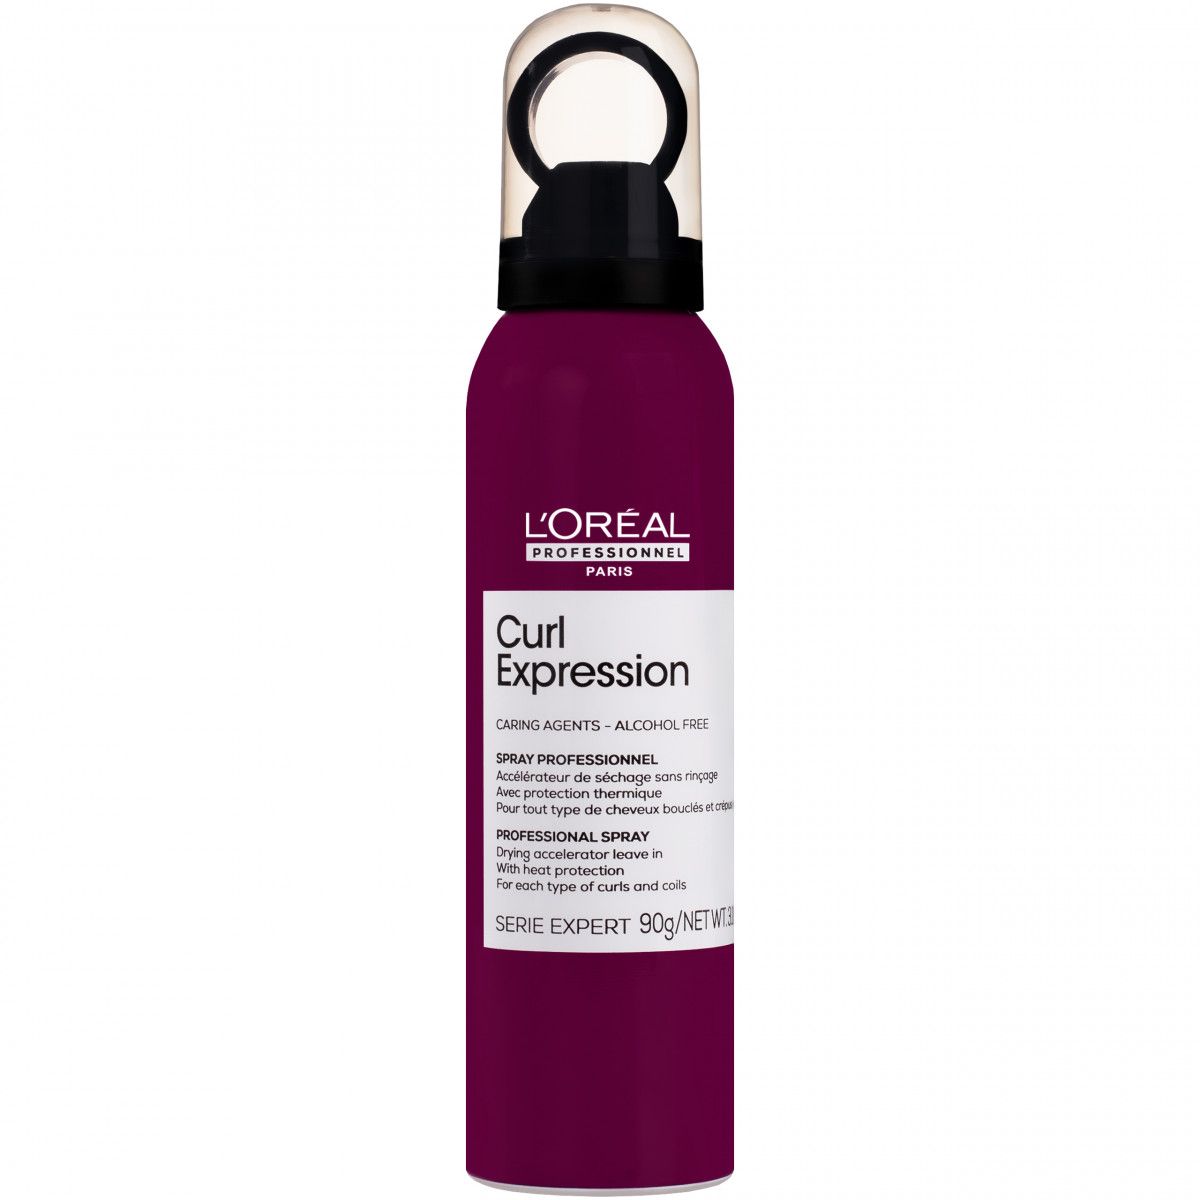 Loreal Curl Expression Drying Accelerator - spray przyspieszający suszenie włosów, 150ml